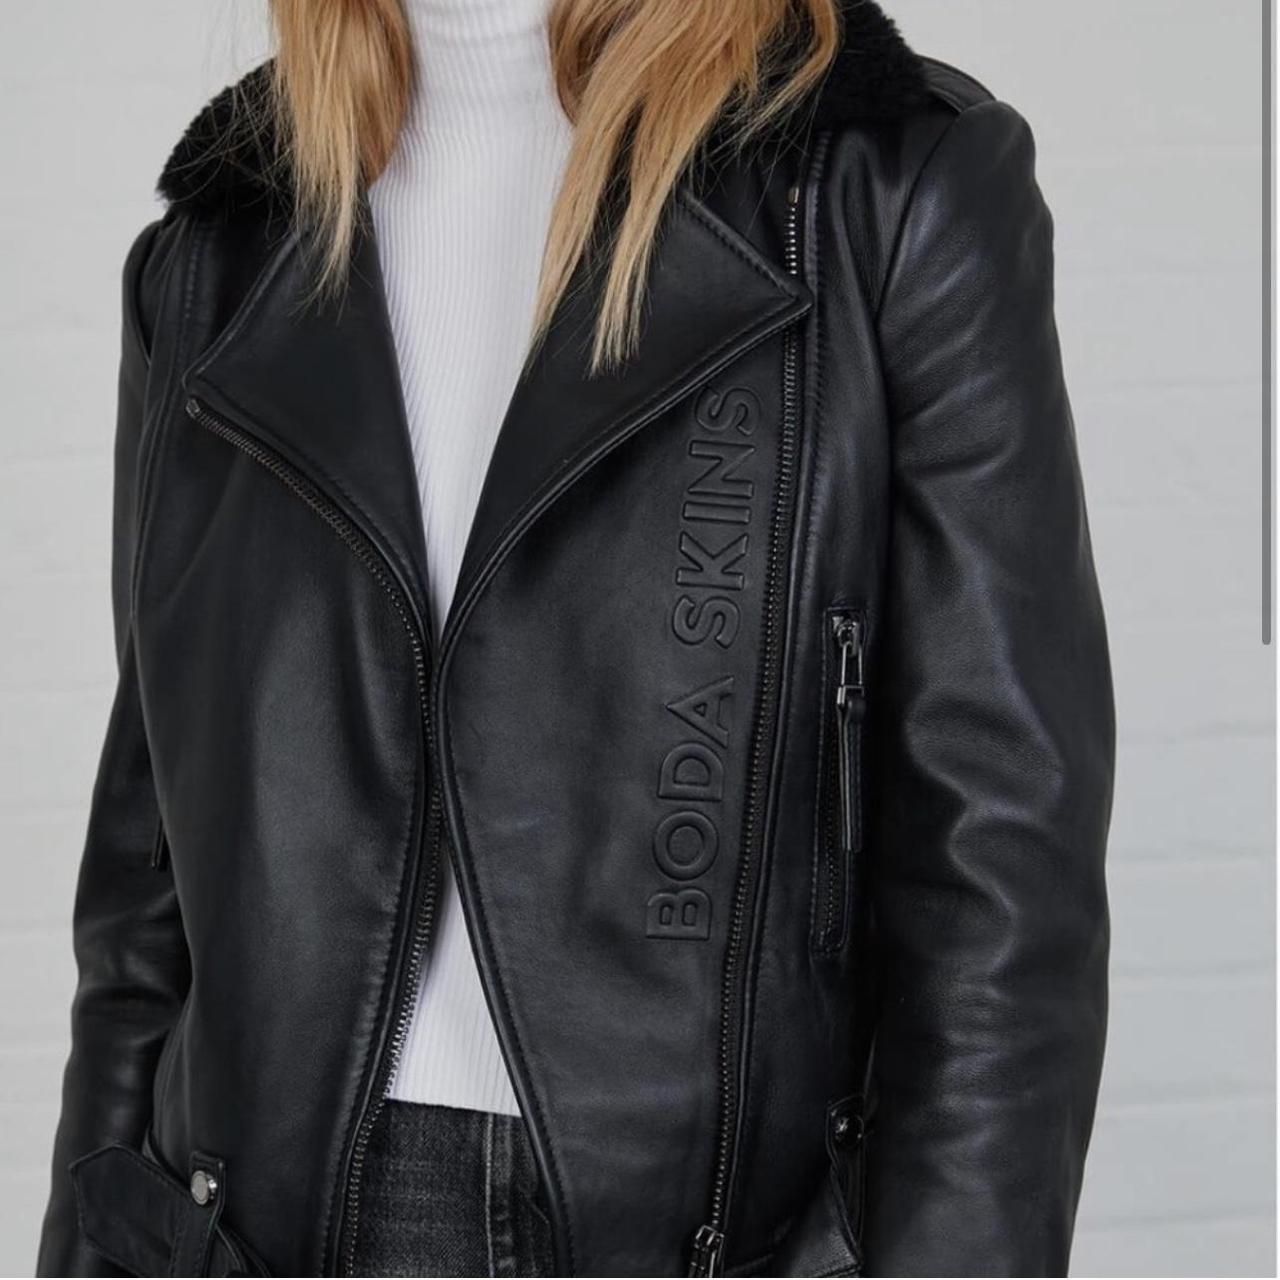 Boda Skins Women's Black Jacket